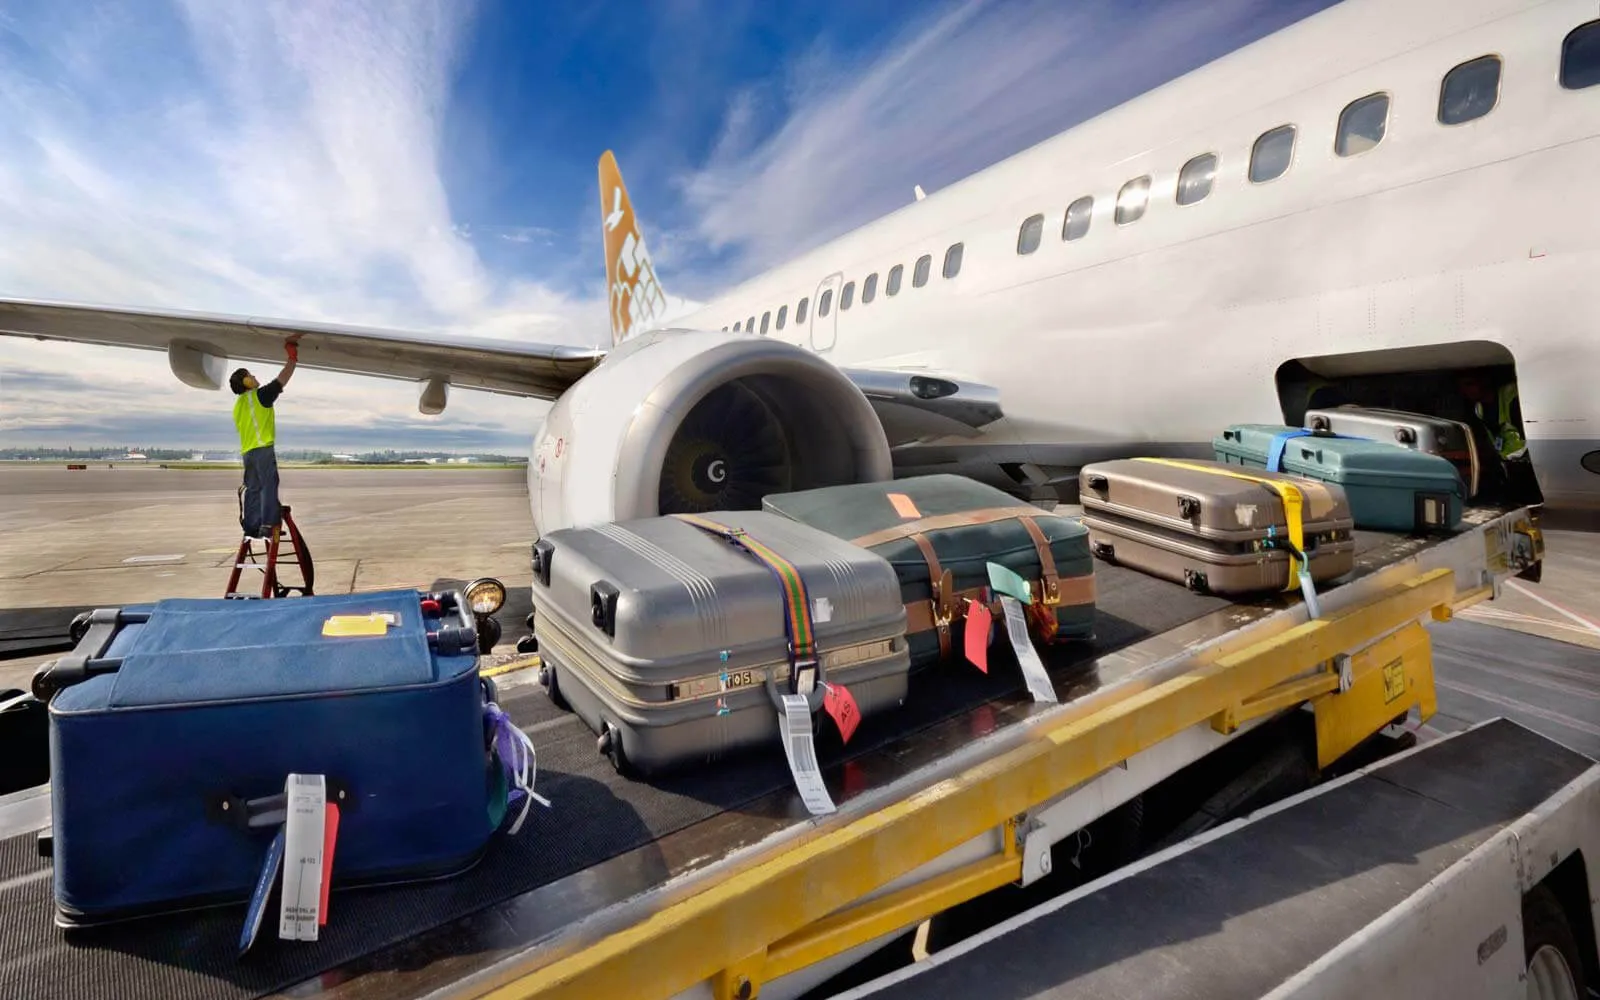 "تحصل في كبرى شركات طيران العالم" .. مسؤول إعلامي يبرر ترك حقائب المسافرين بدمشق